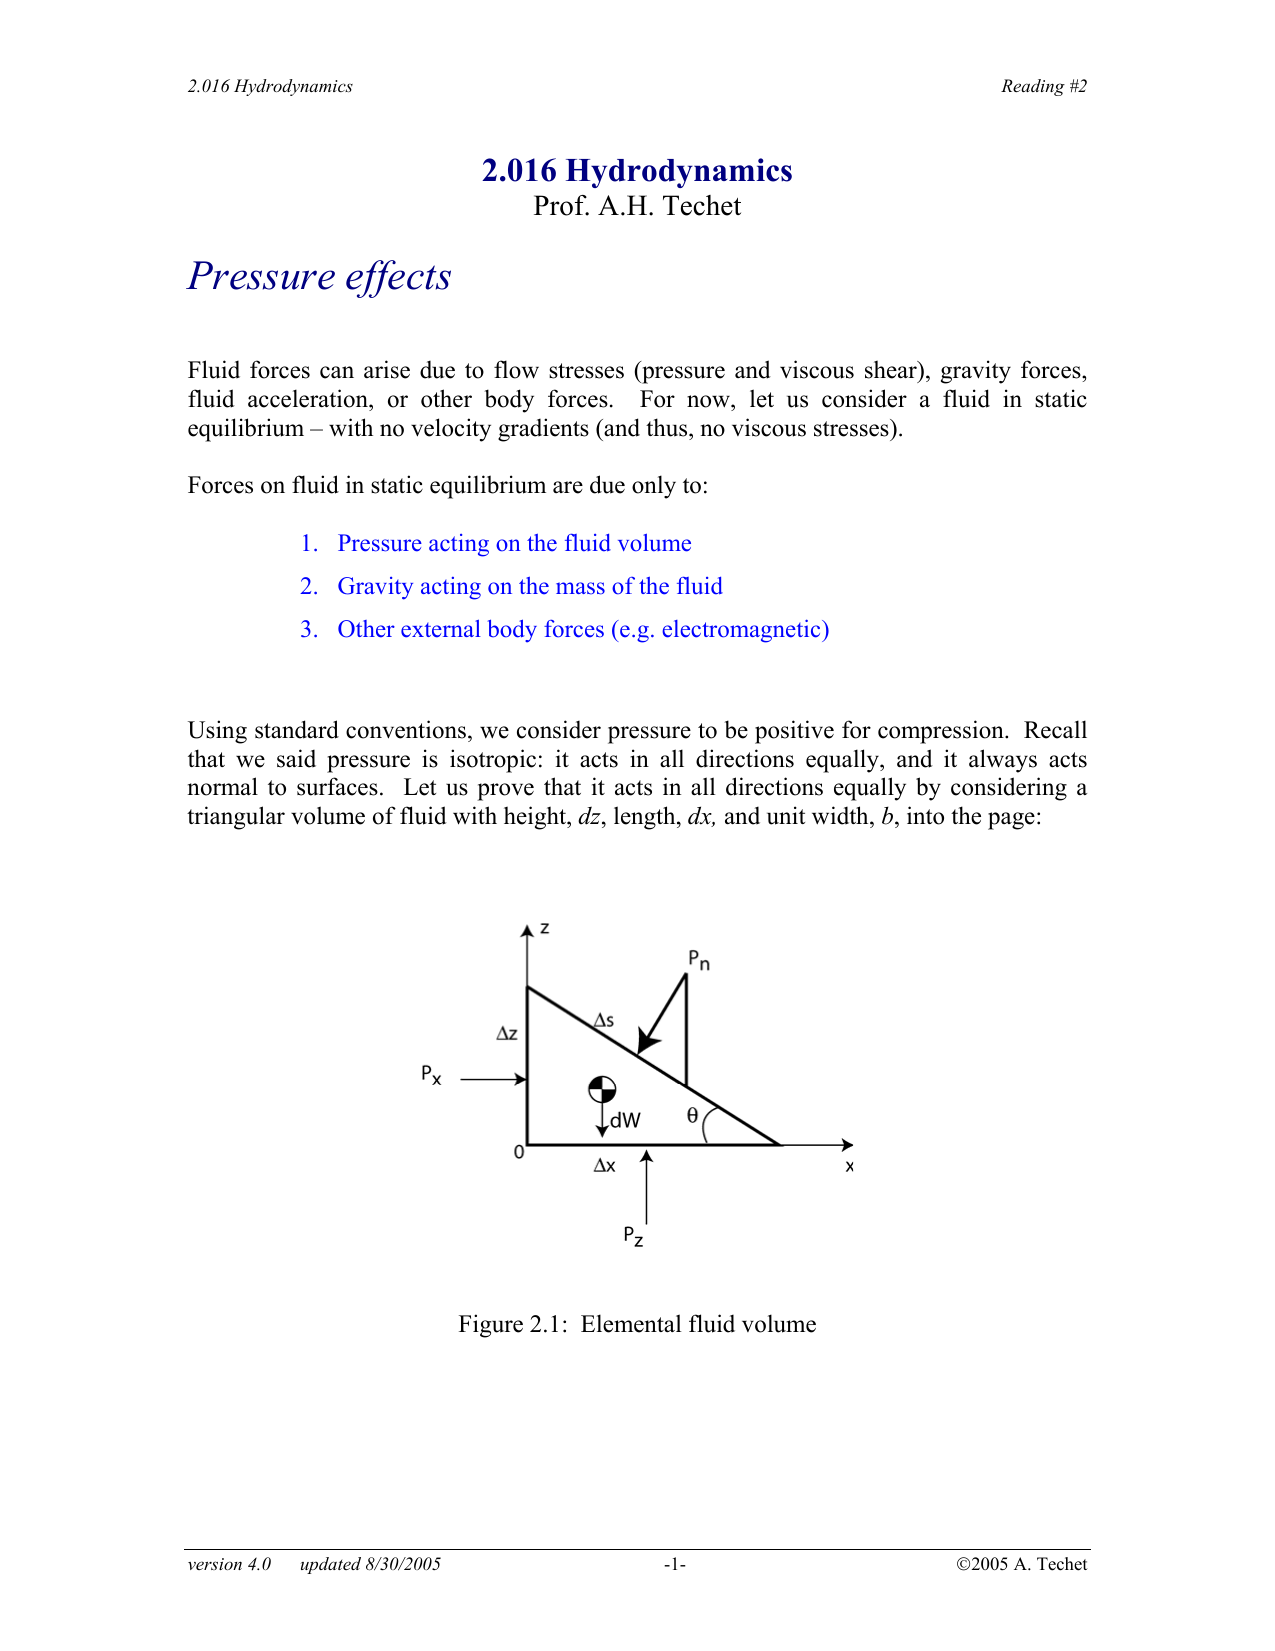 hydrodynamic ram pressure effect